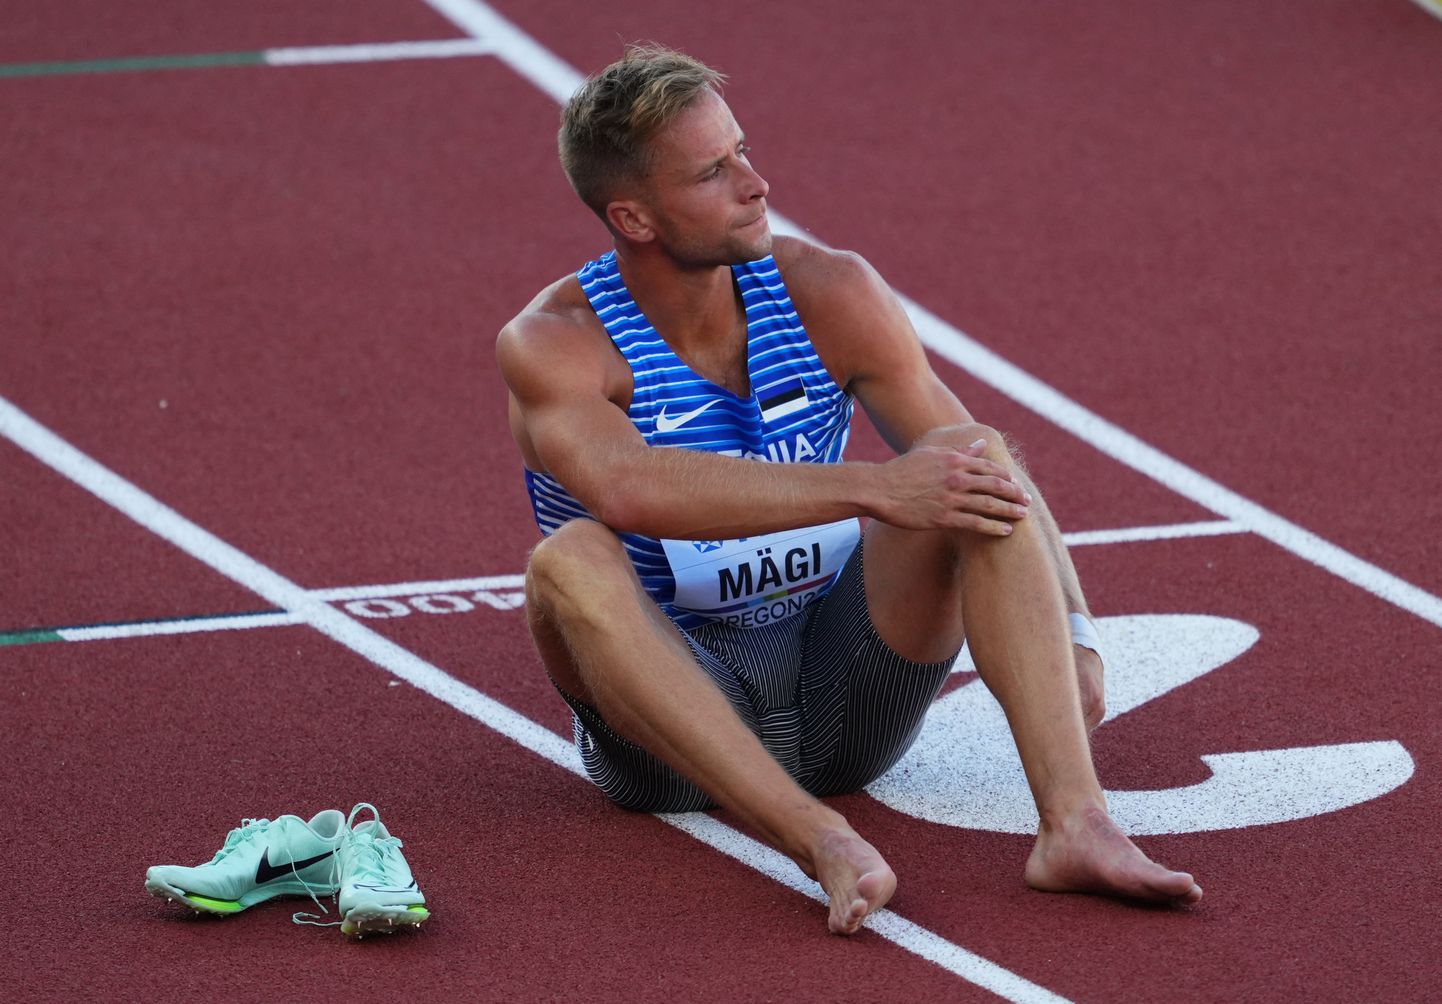 Vigastus lõpetas Rasmus Mägi eelmise hooaja varakult. Viimase stardi tegi ta 19. juulil Eugene'is peetud MMil